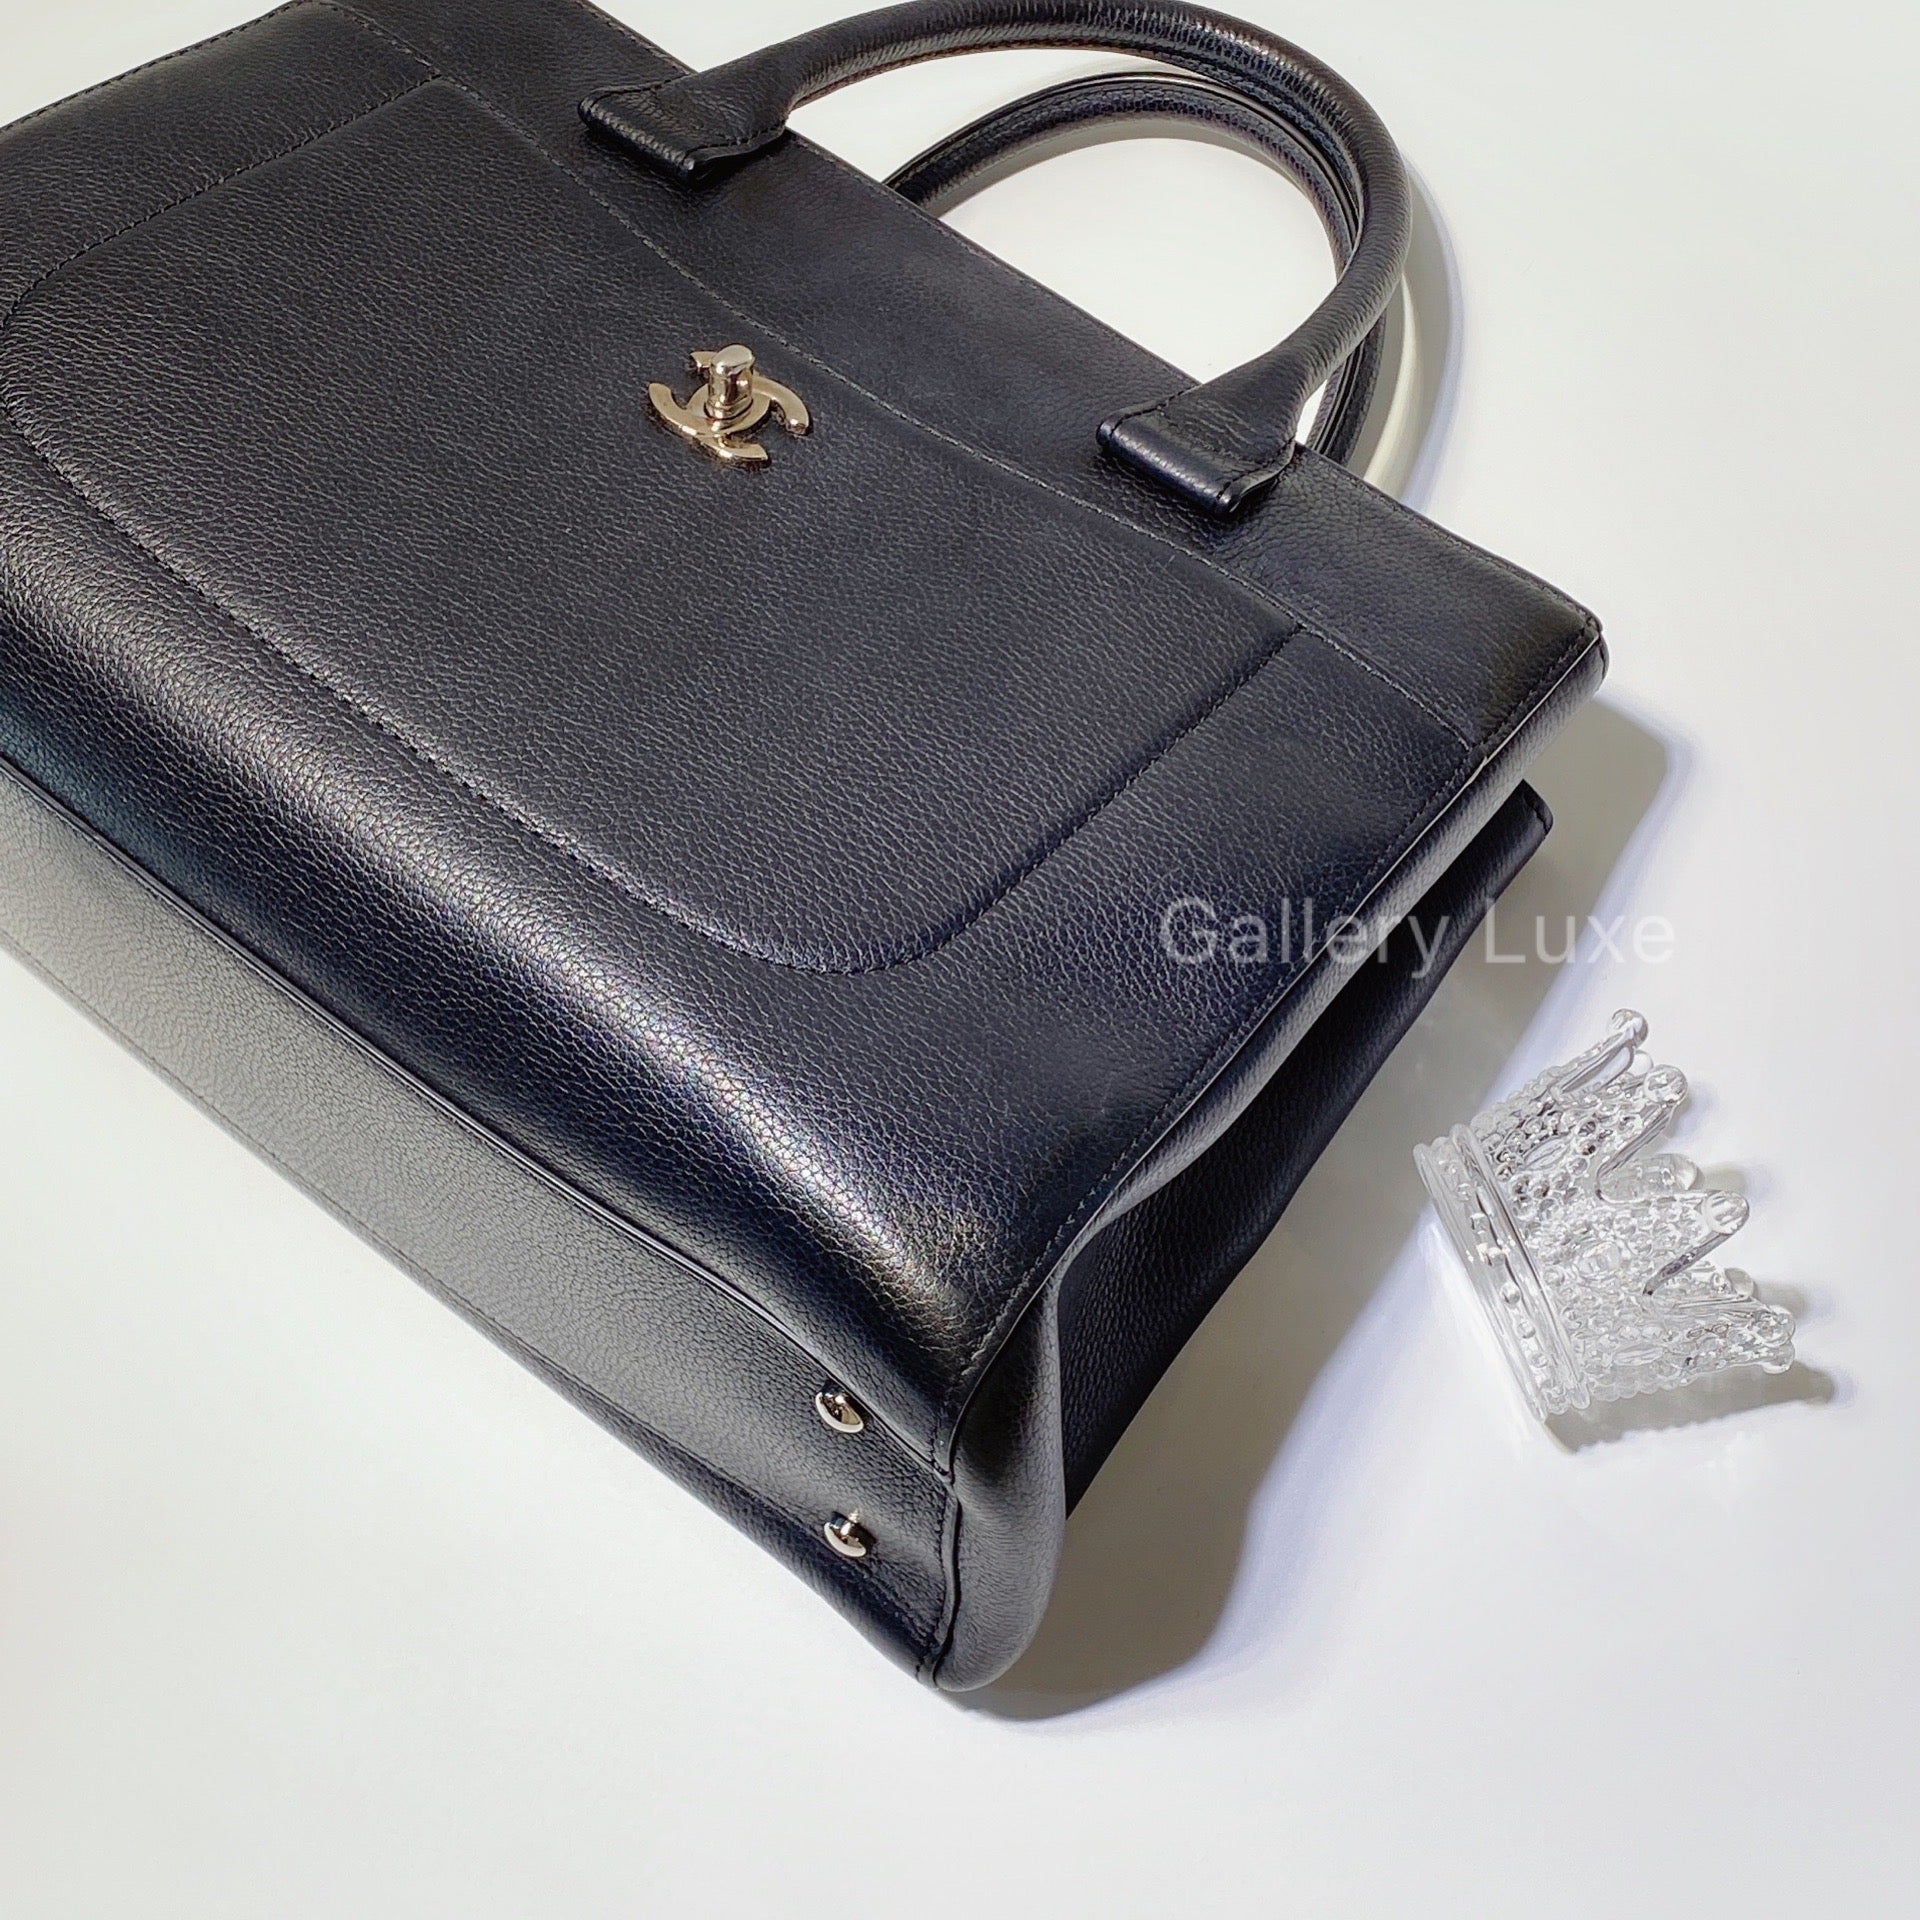 No.2554-Chanel Neo Executive Shopping Bag – Gallery Luxe